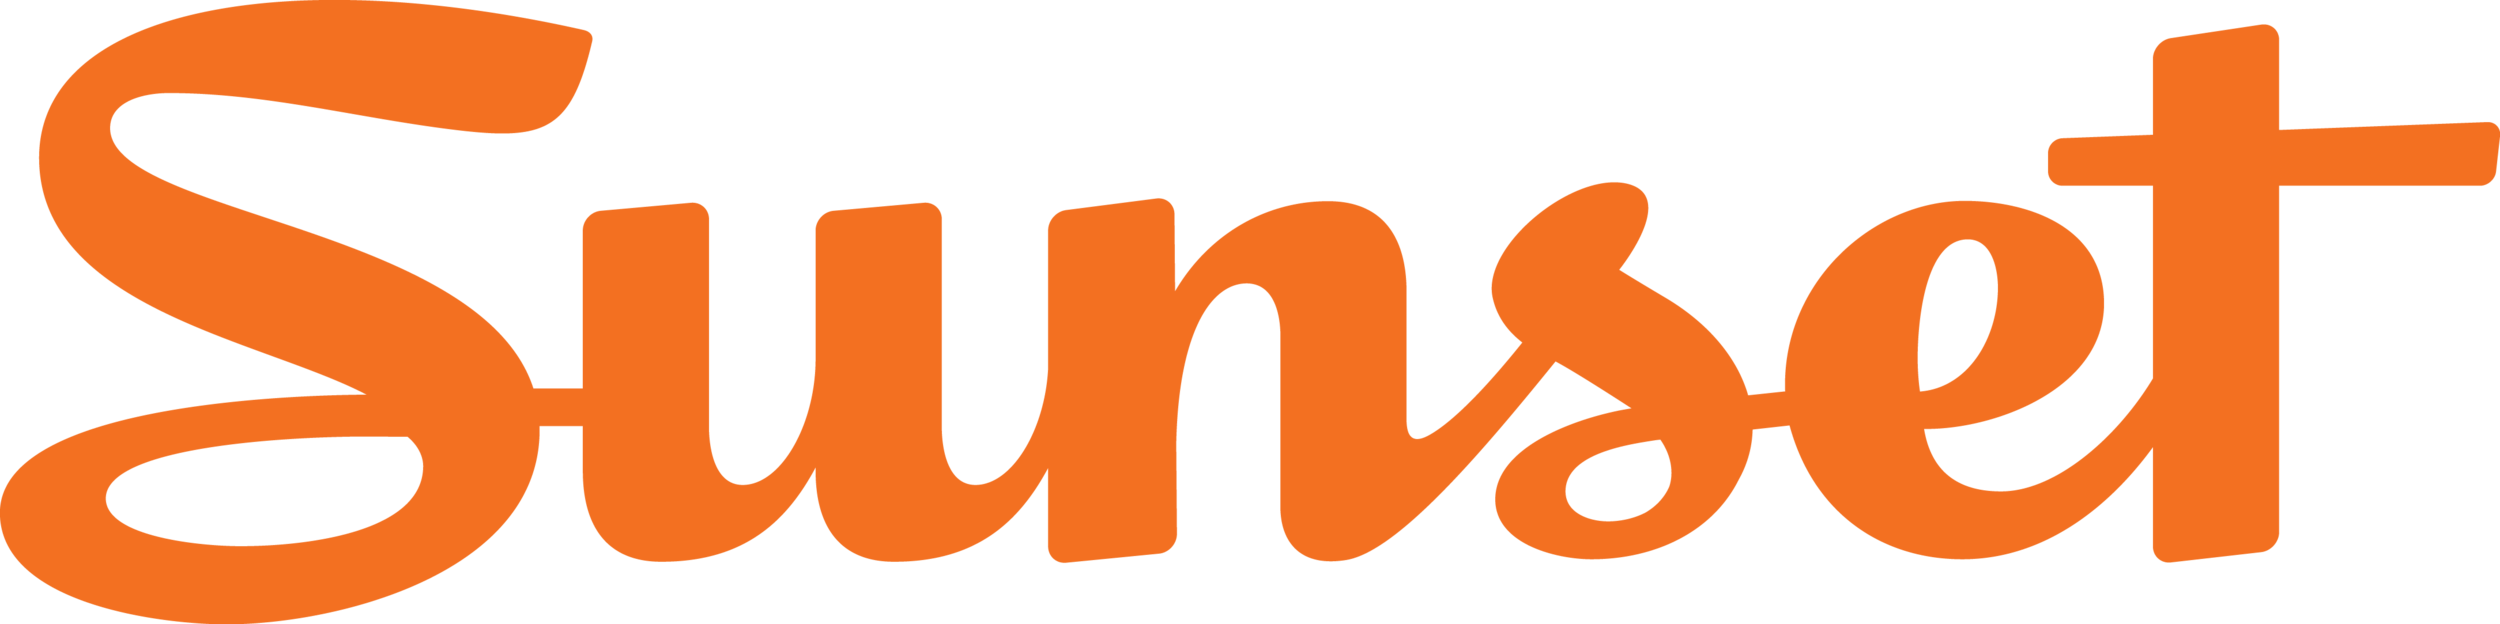 sunset magazine logo.png